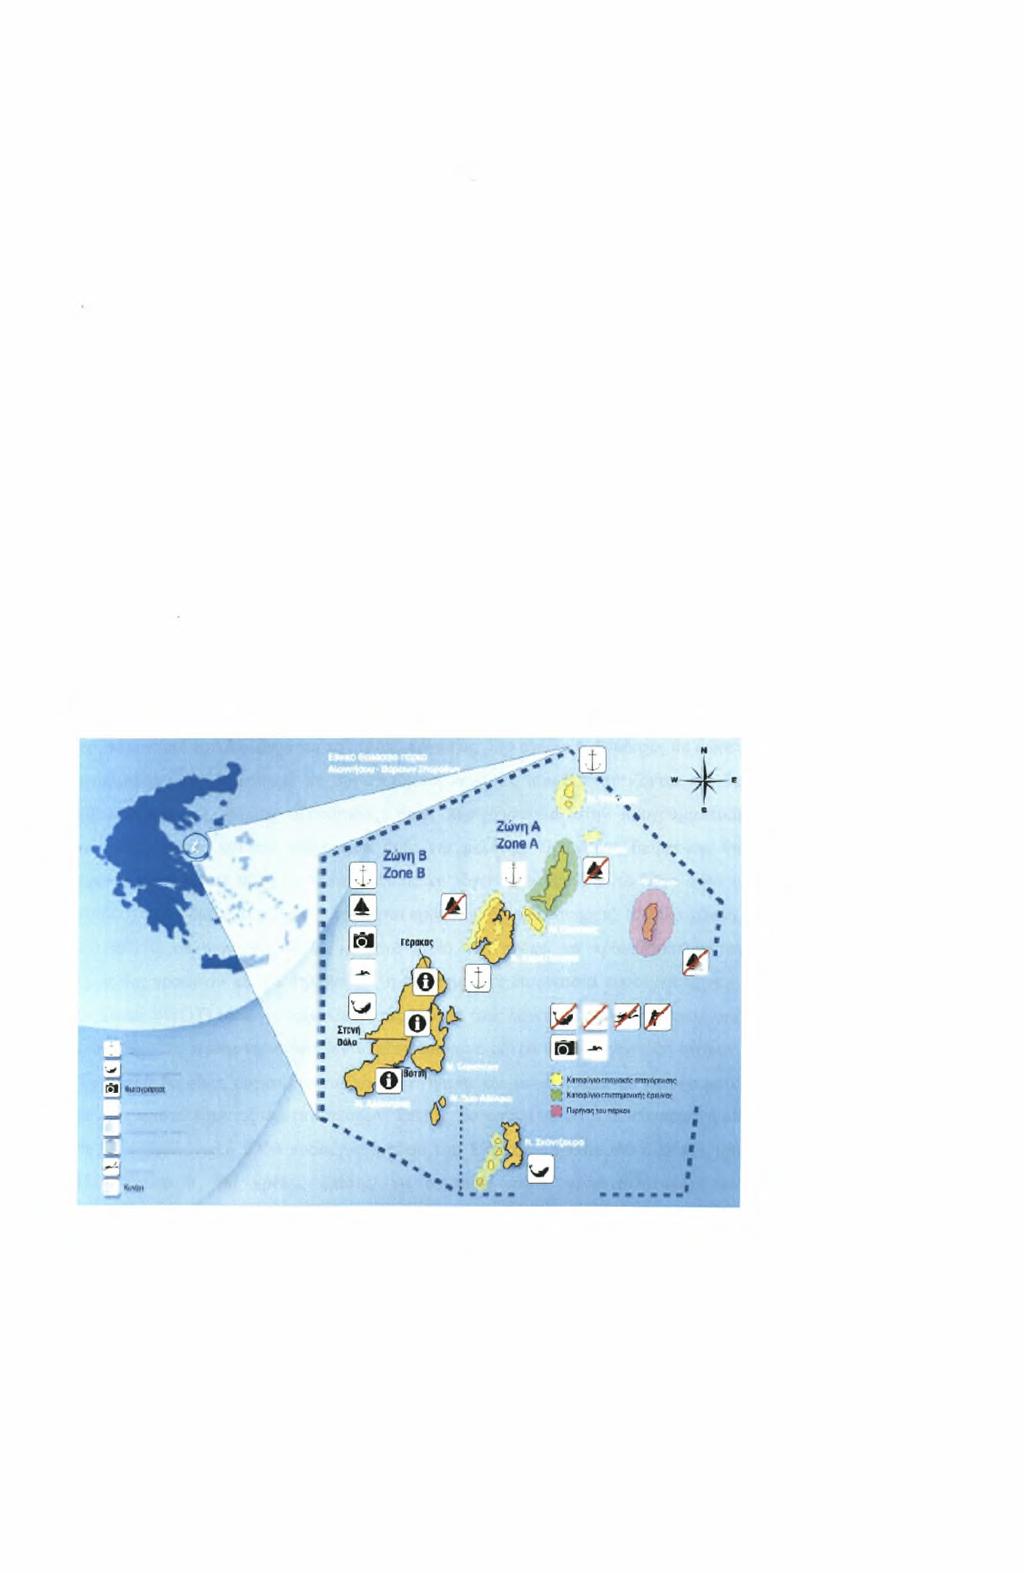 Ζώνη Β1:Χ«ρακτηρίζεται ως Ζώνη Ειδικών Ρυθμίσεων και περιλαμβάνει την θαλάσσια ζώνη πλάτους 200 μέτρων από την ακτή, από το ακρωτήριο Κάλαμος μέχρι το ακρωτήρι Αμμώνι(Σ1-Σ2).